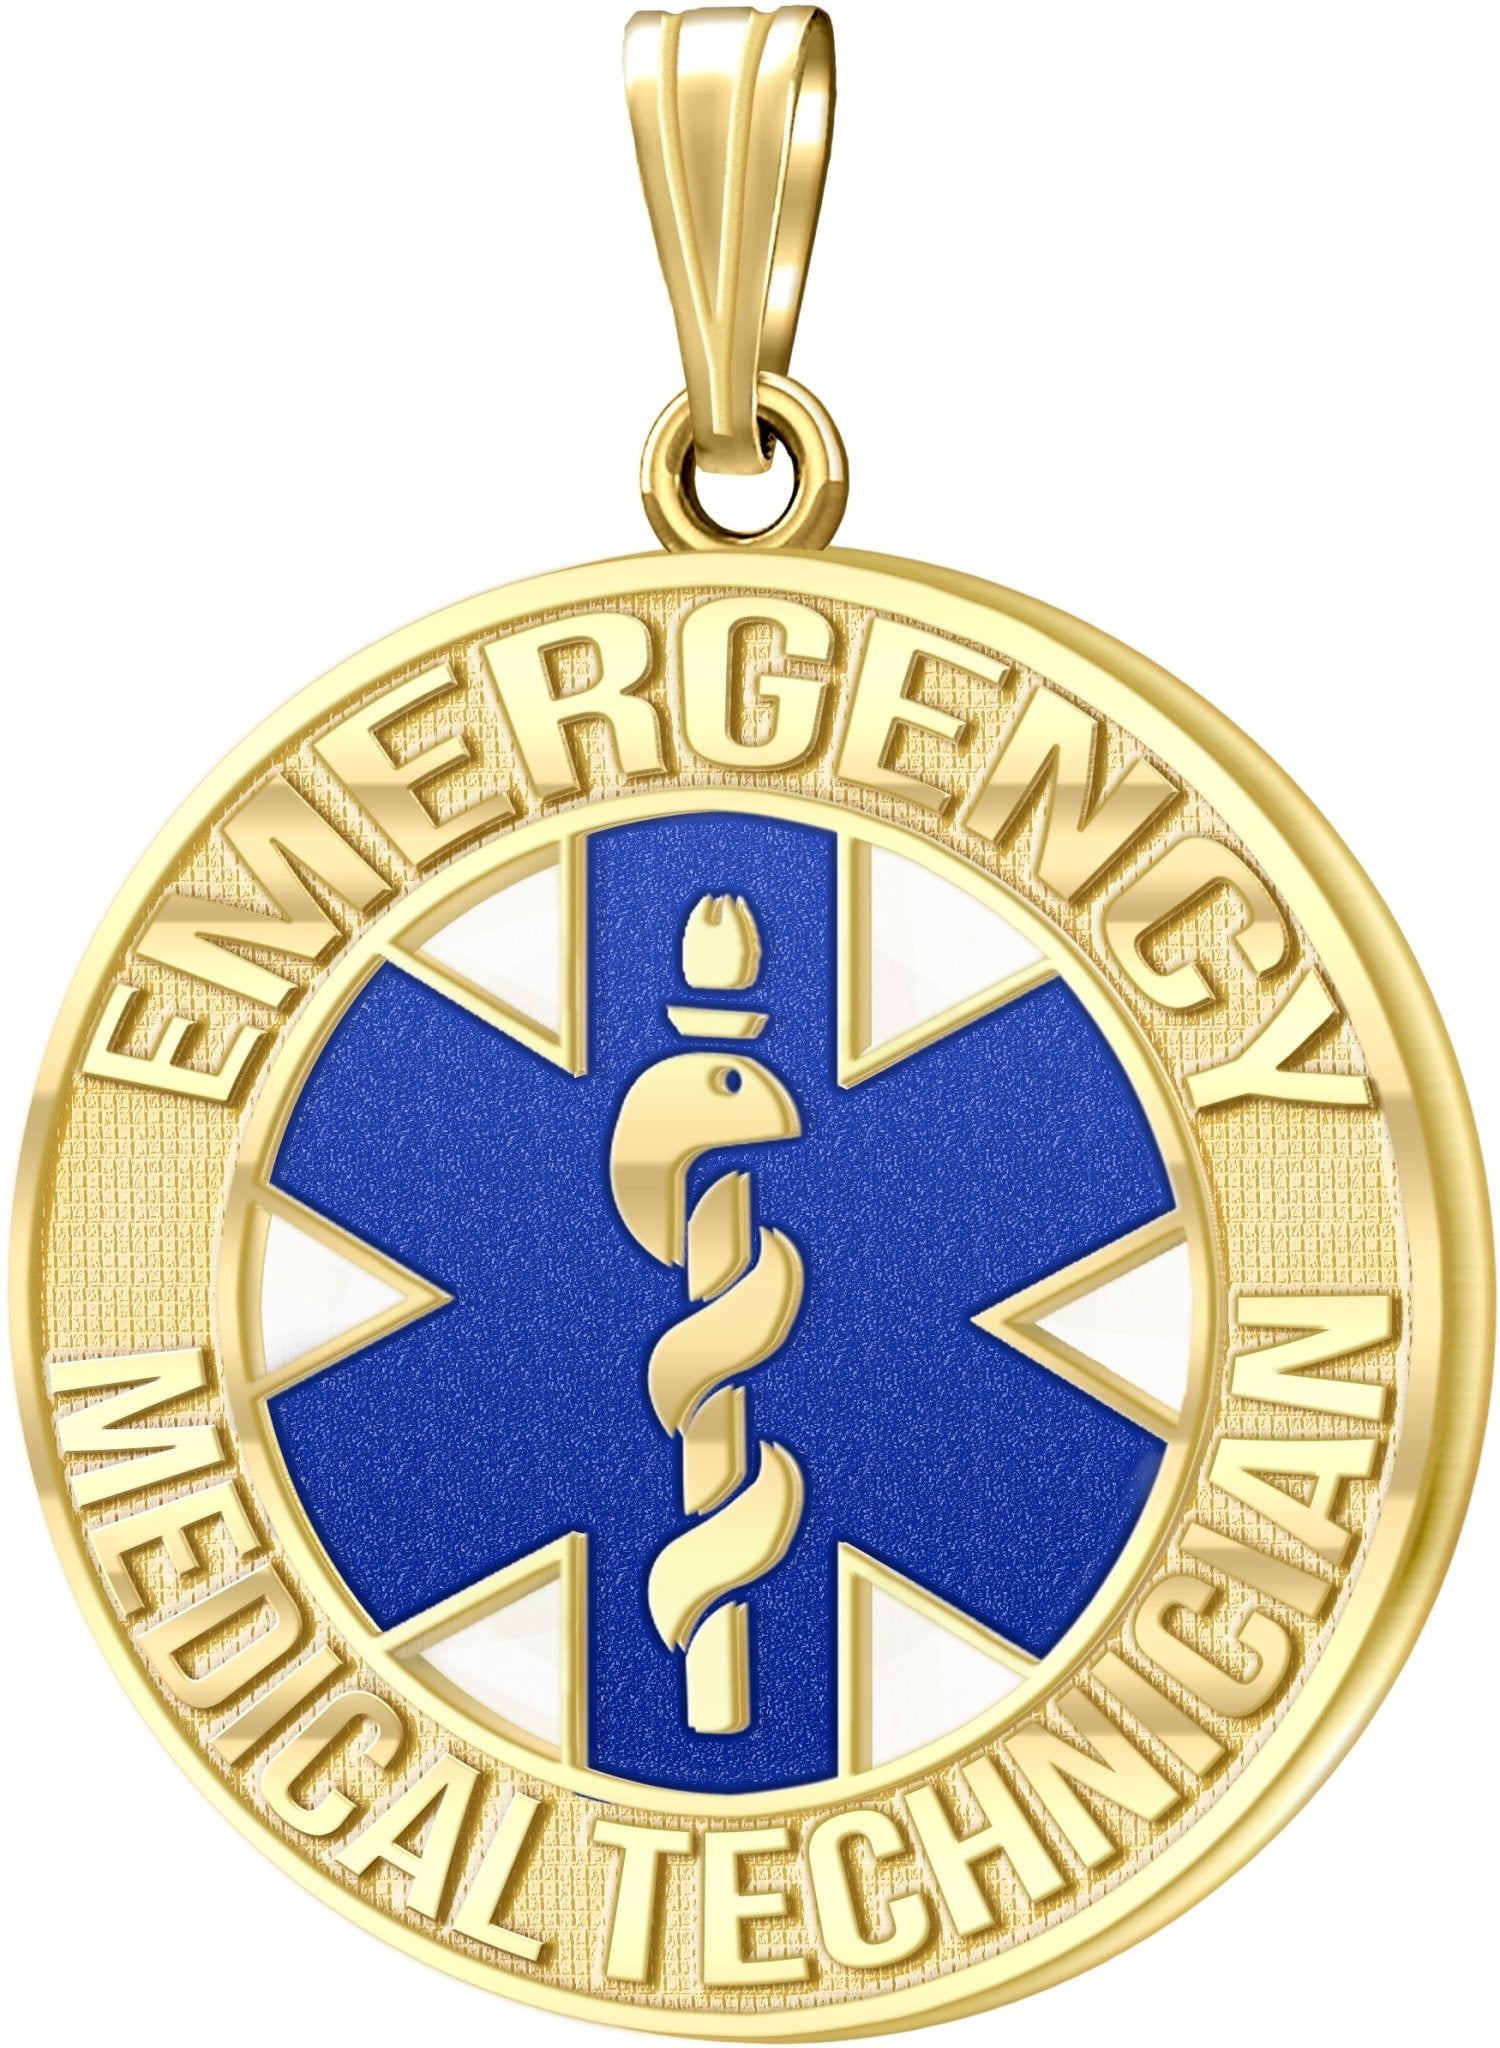 Men's 14k Yellow Gold 26mm EMT Medical Alert Medal Pendant Necklace, 3 Color Options - US Jewels